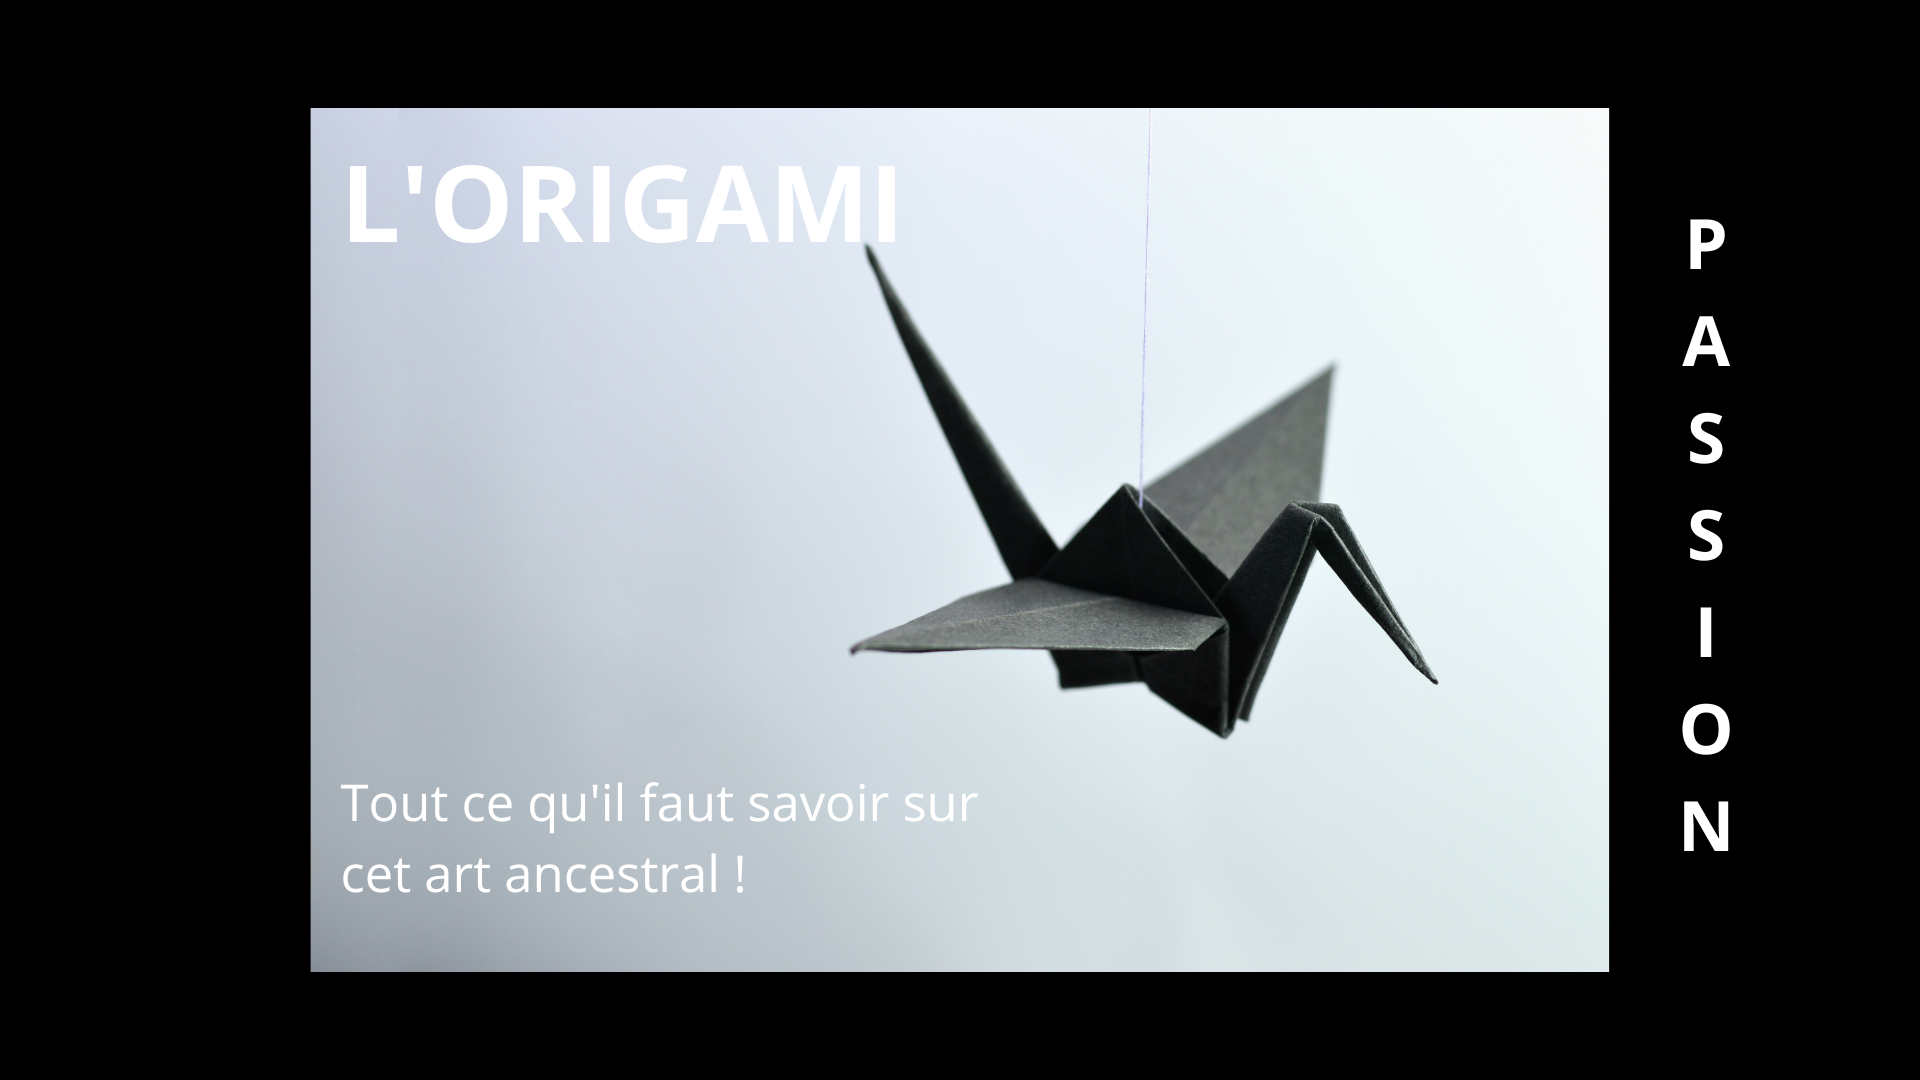 Origami facile pour les enfants: ANIMAUX DIFFÉRENTS FACILES/origami facile  enfant | origami facile enfant| origami animaux | origami animaux 3d idéal